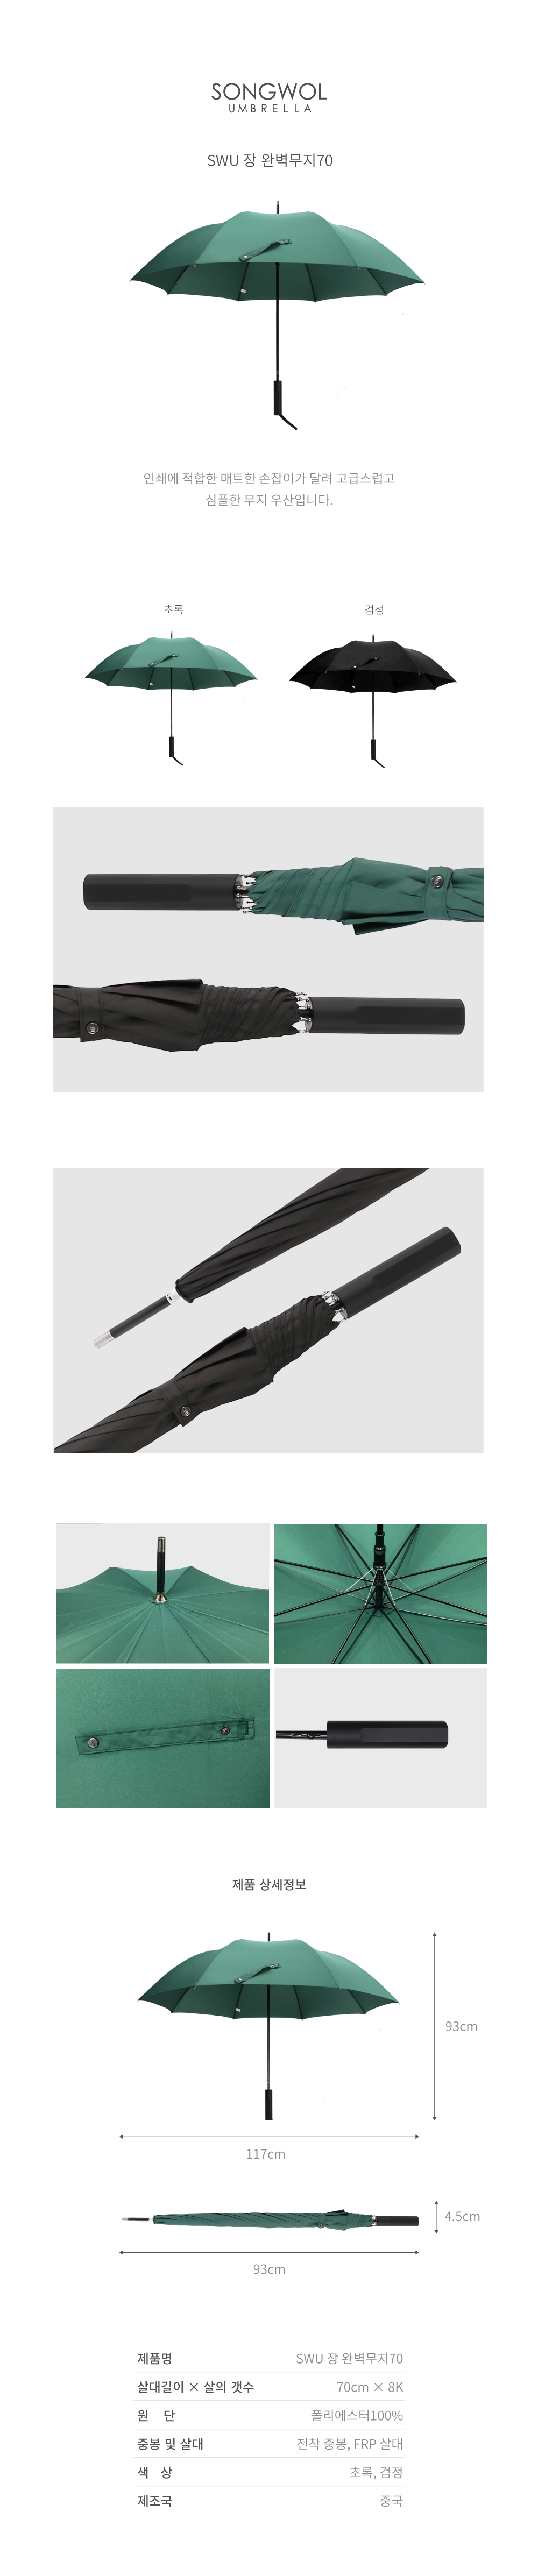 인쇄에 적합한 매트한 손잡이가 달려 고급스럽고 심플한 무지 우산입니다.